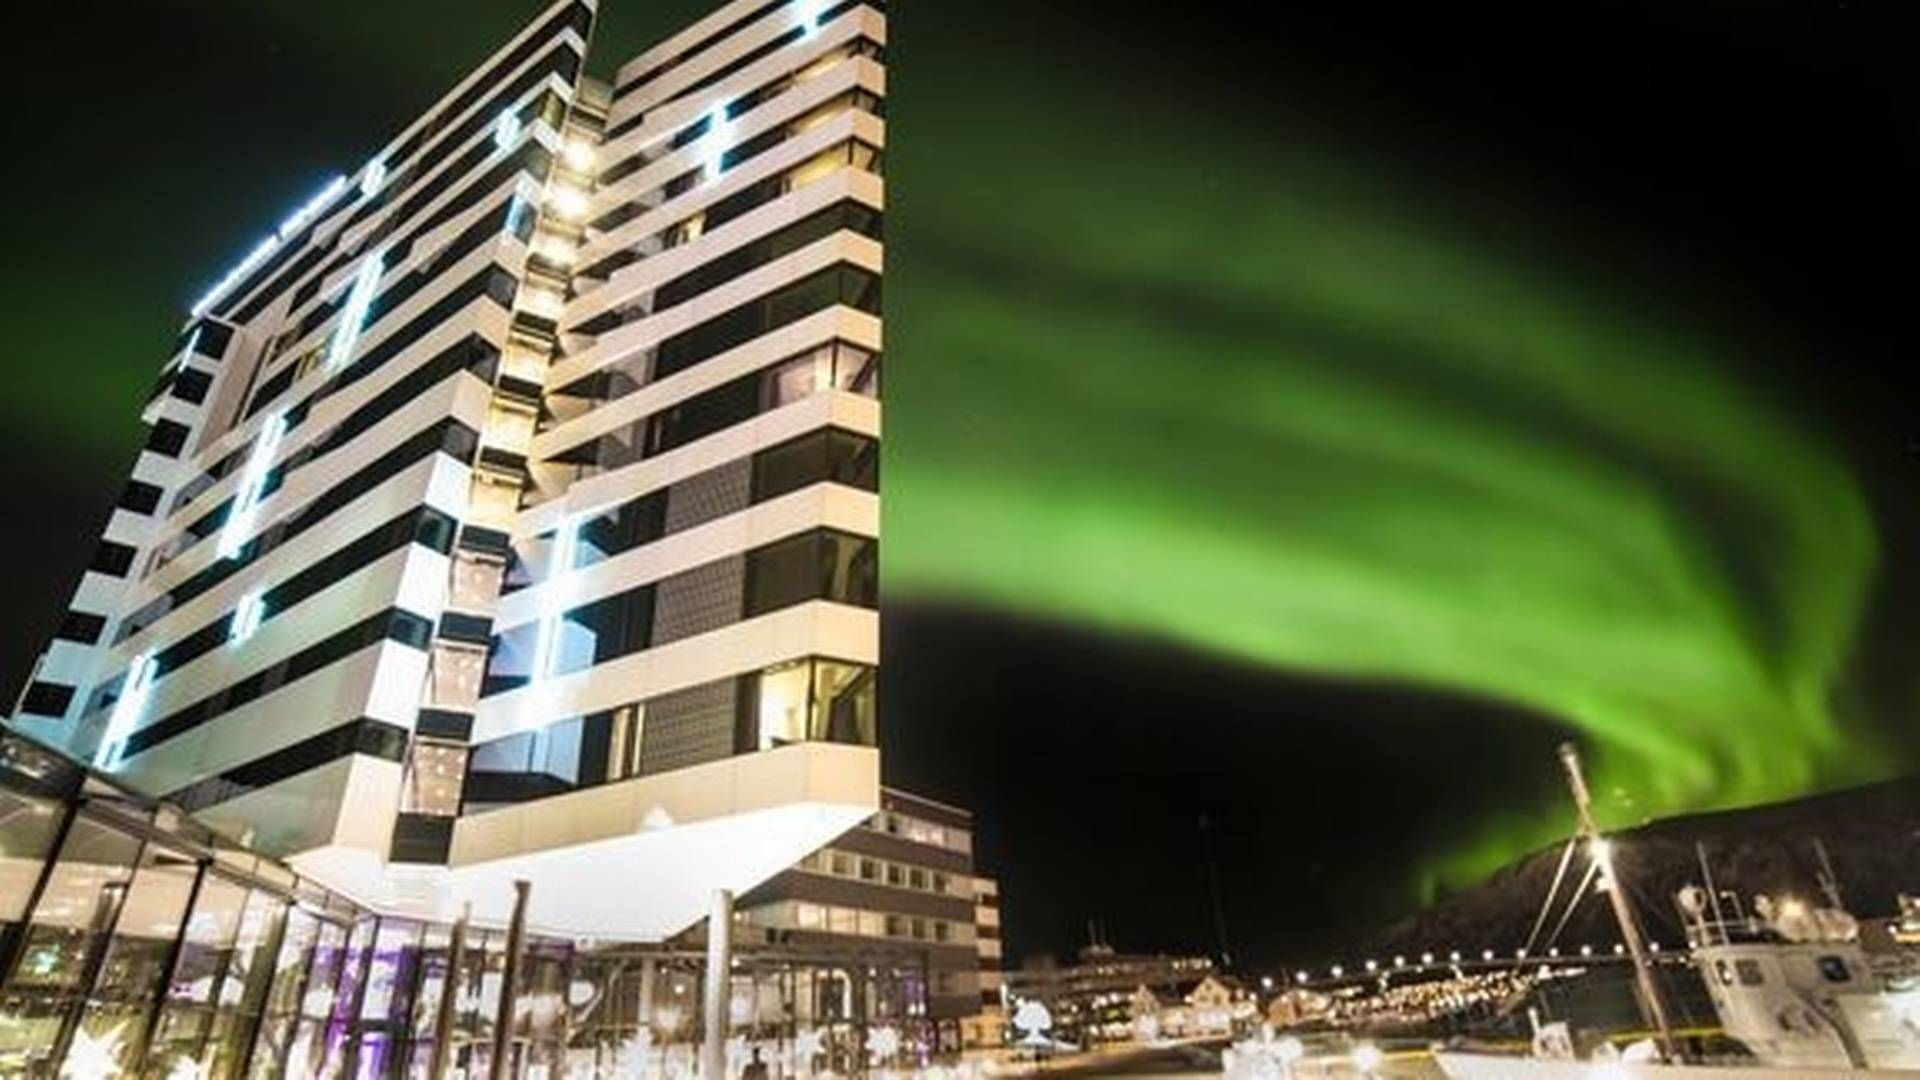 LANDEMERKE: Clarion Hotel The Edge ligger ved vannkanten i Tromsø og er blitt et landemerke i byen. | Foto: Anne-Marie Forker